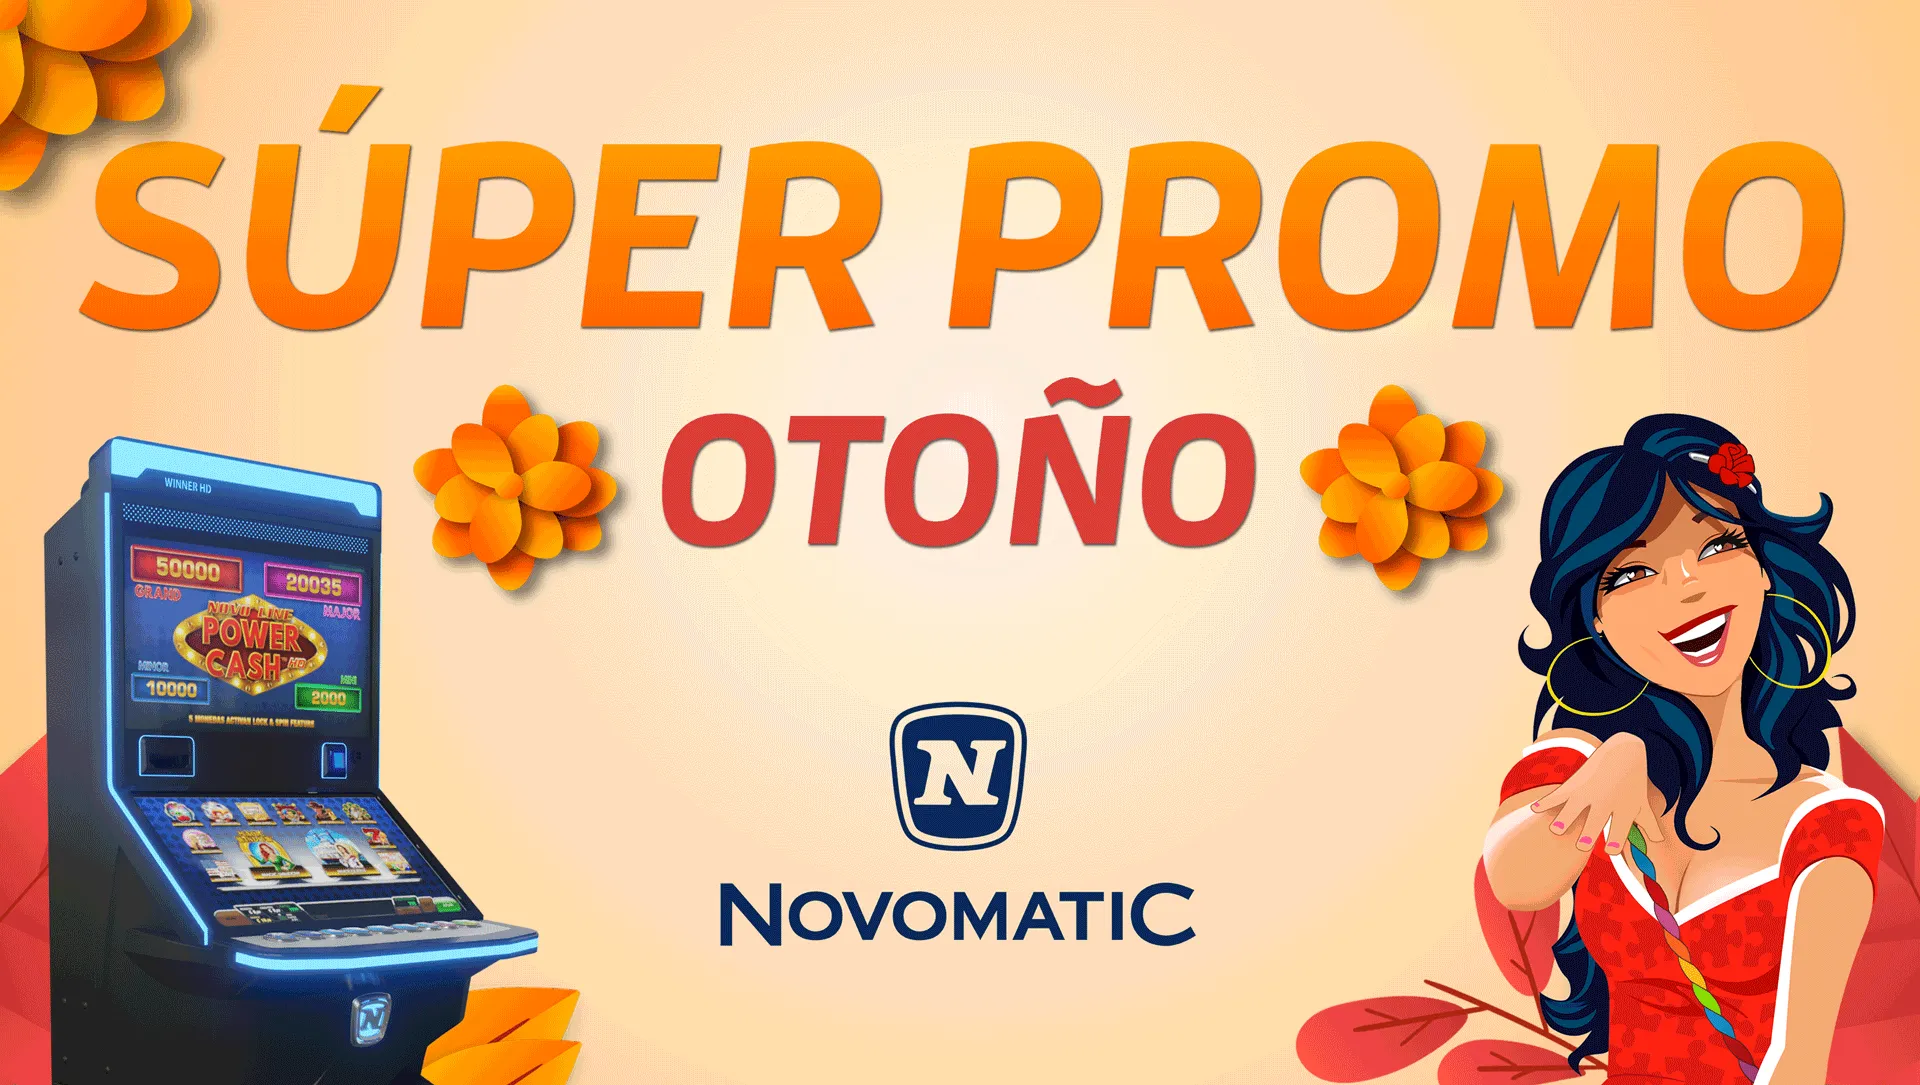 SÚPER PROMO con ofertas de otoño Macarena y Winner HD de NOVOMATIC.